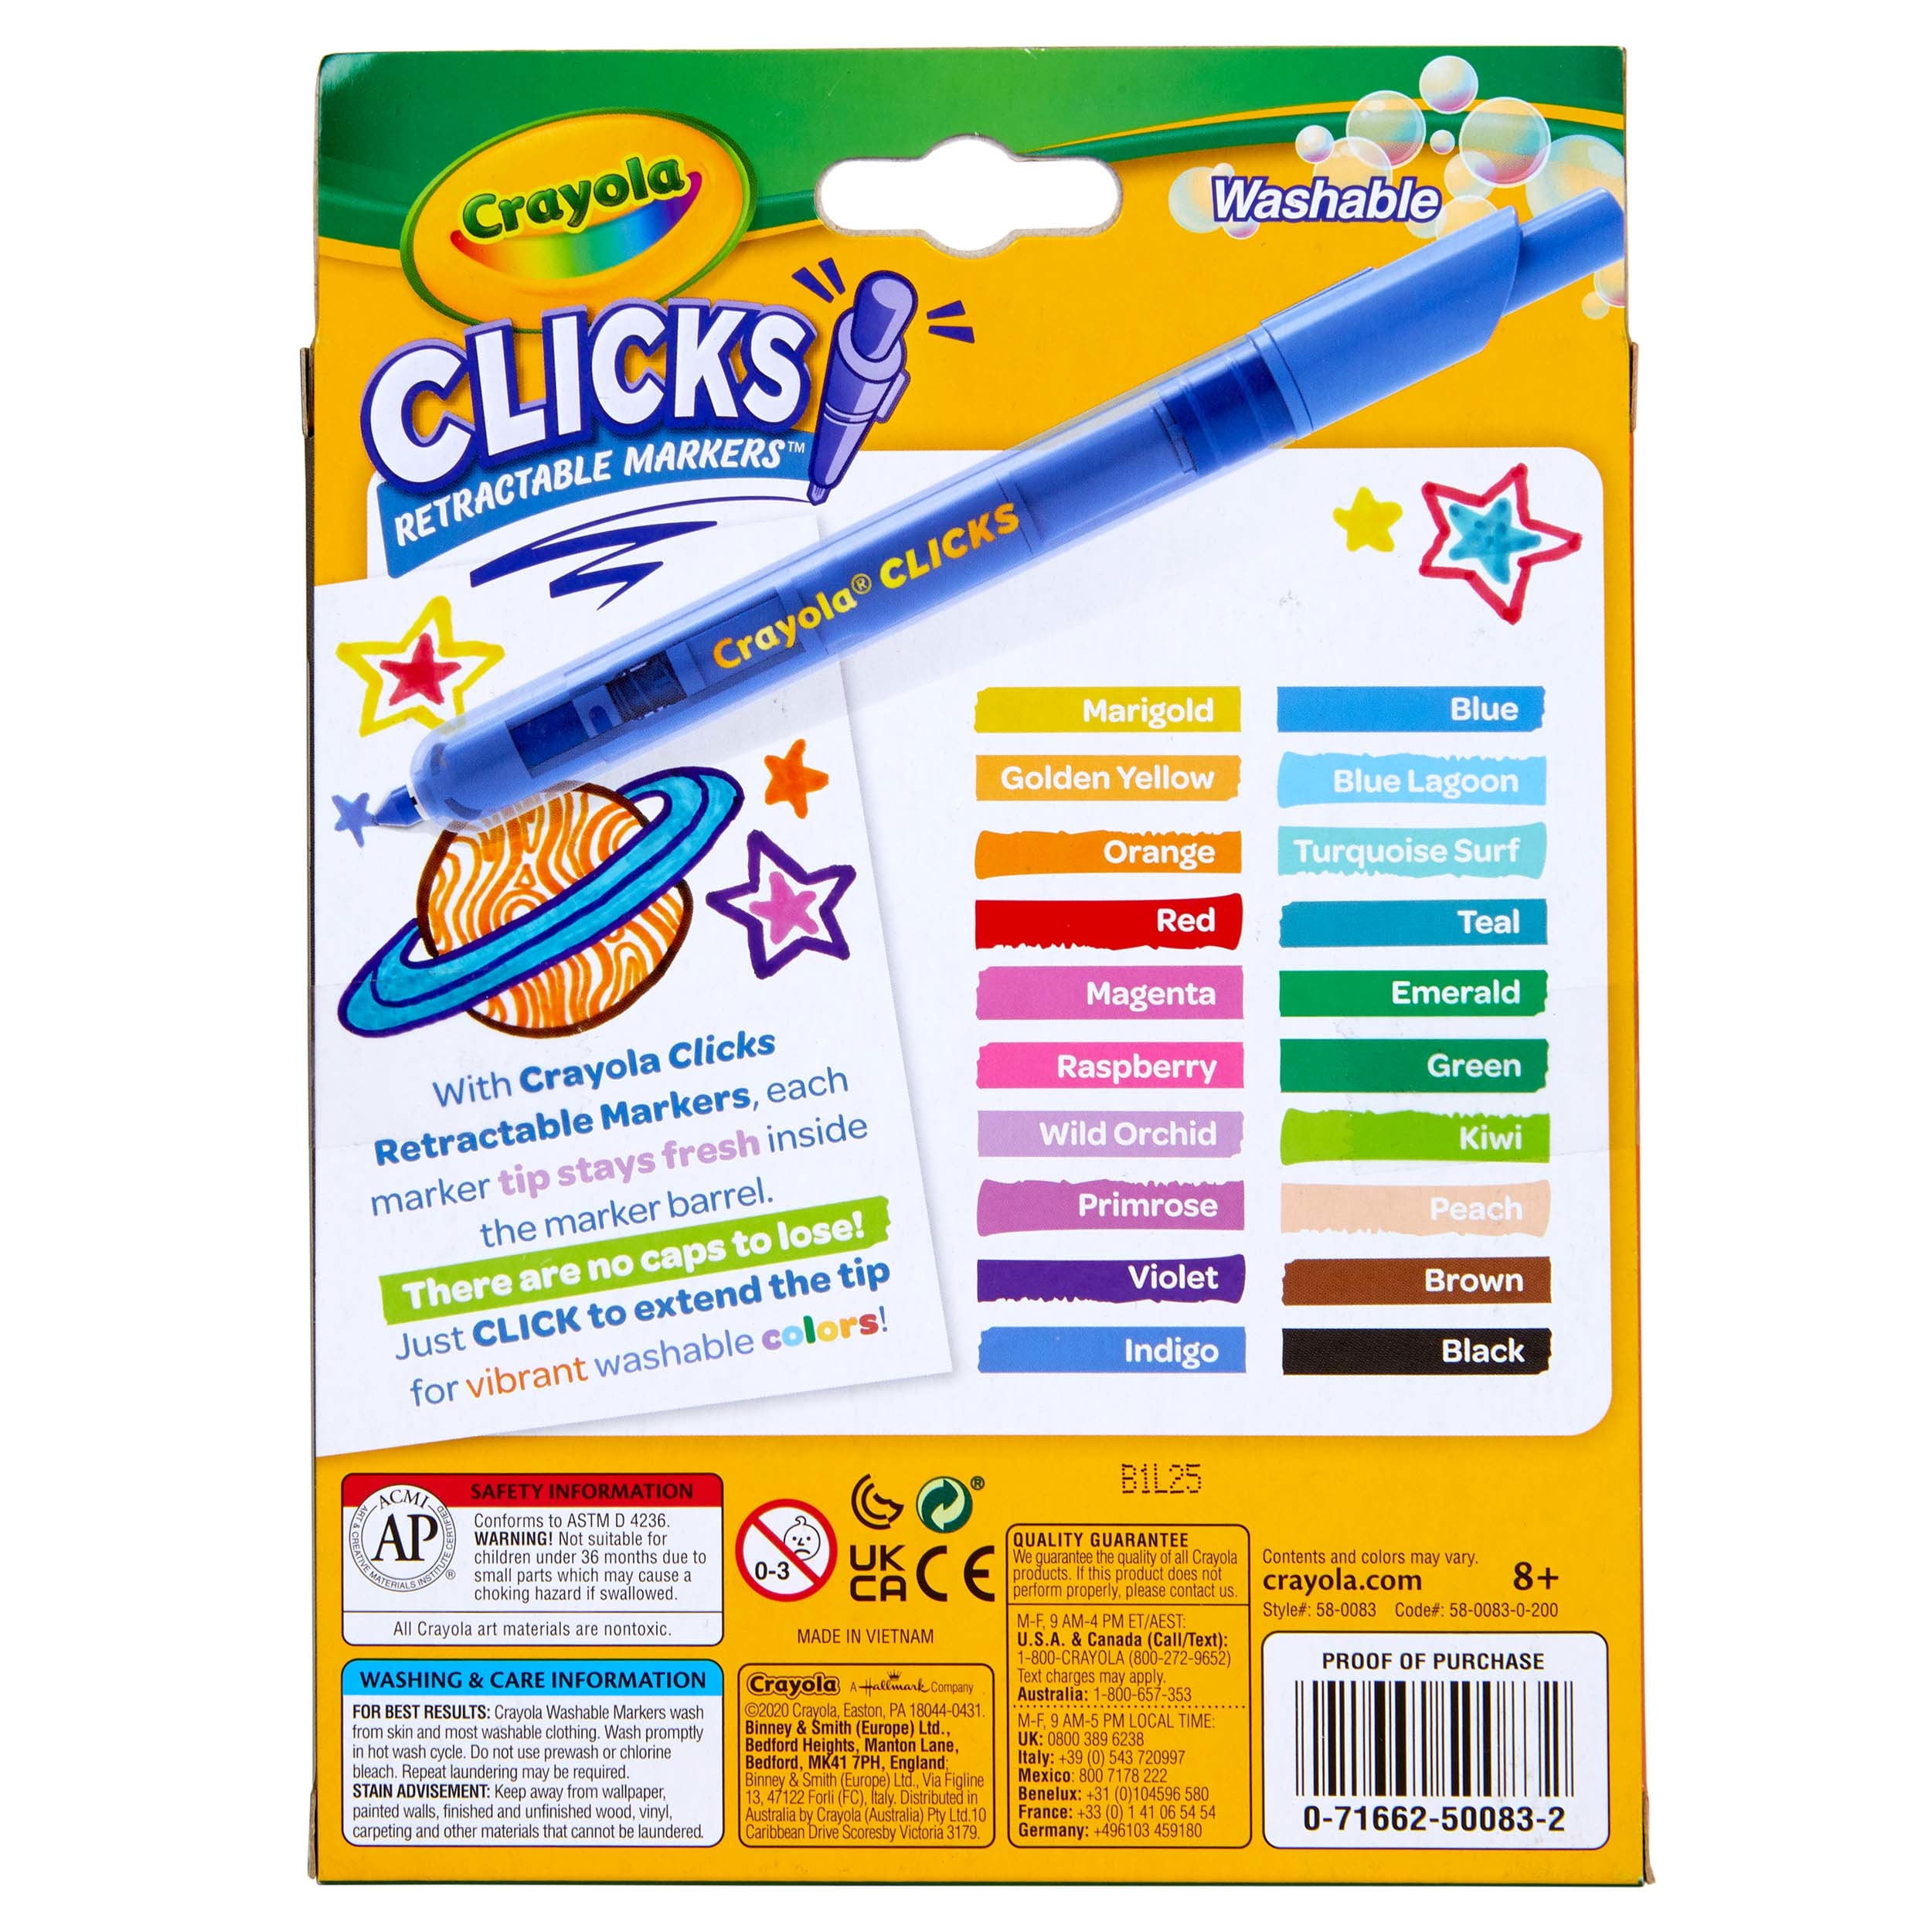 Crayola Clicks Retractable Markers, Crayola.com